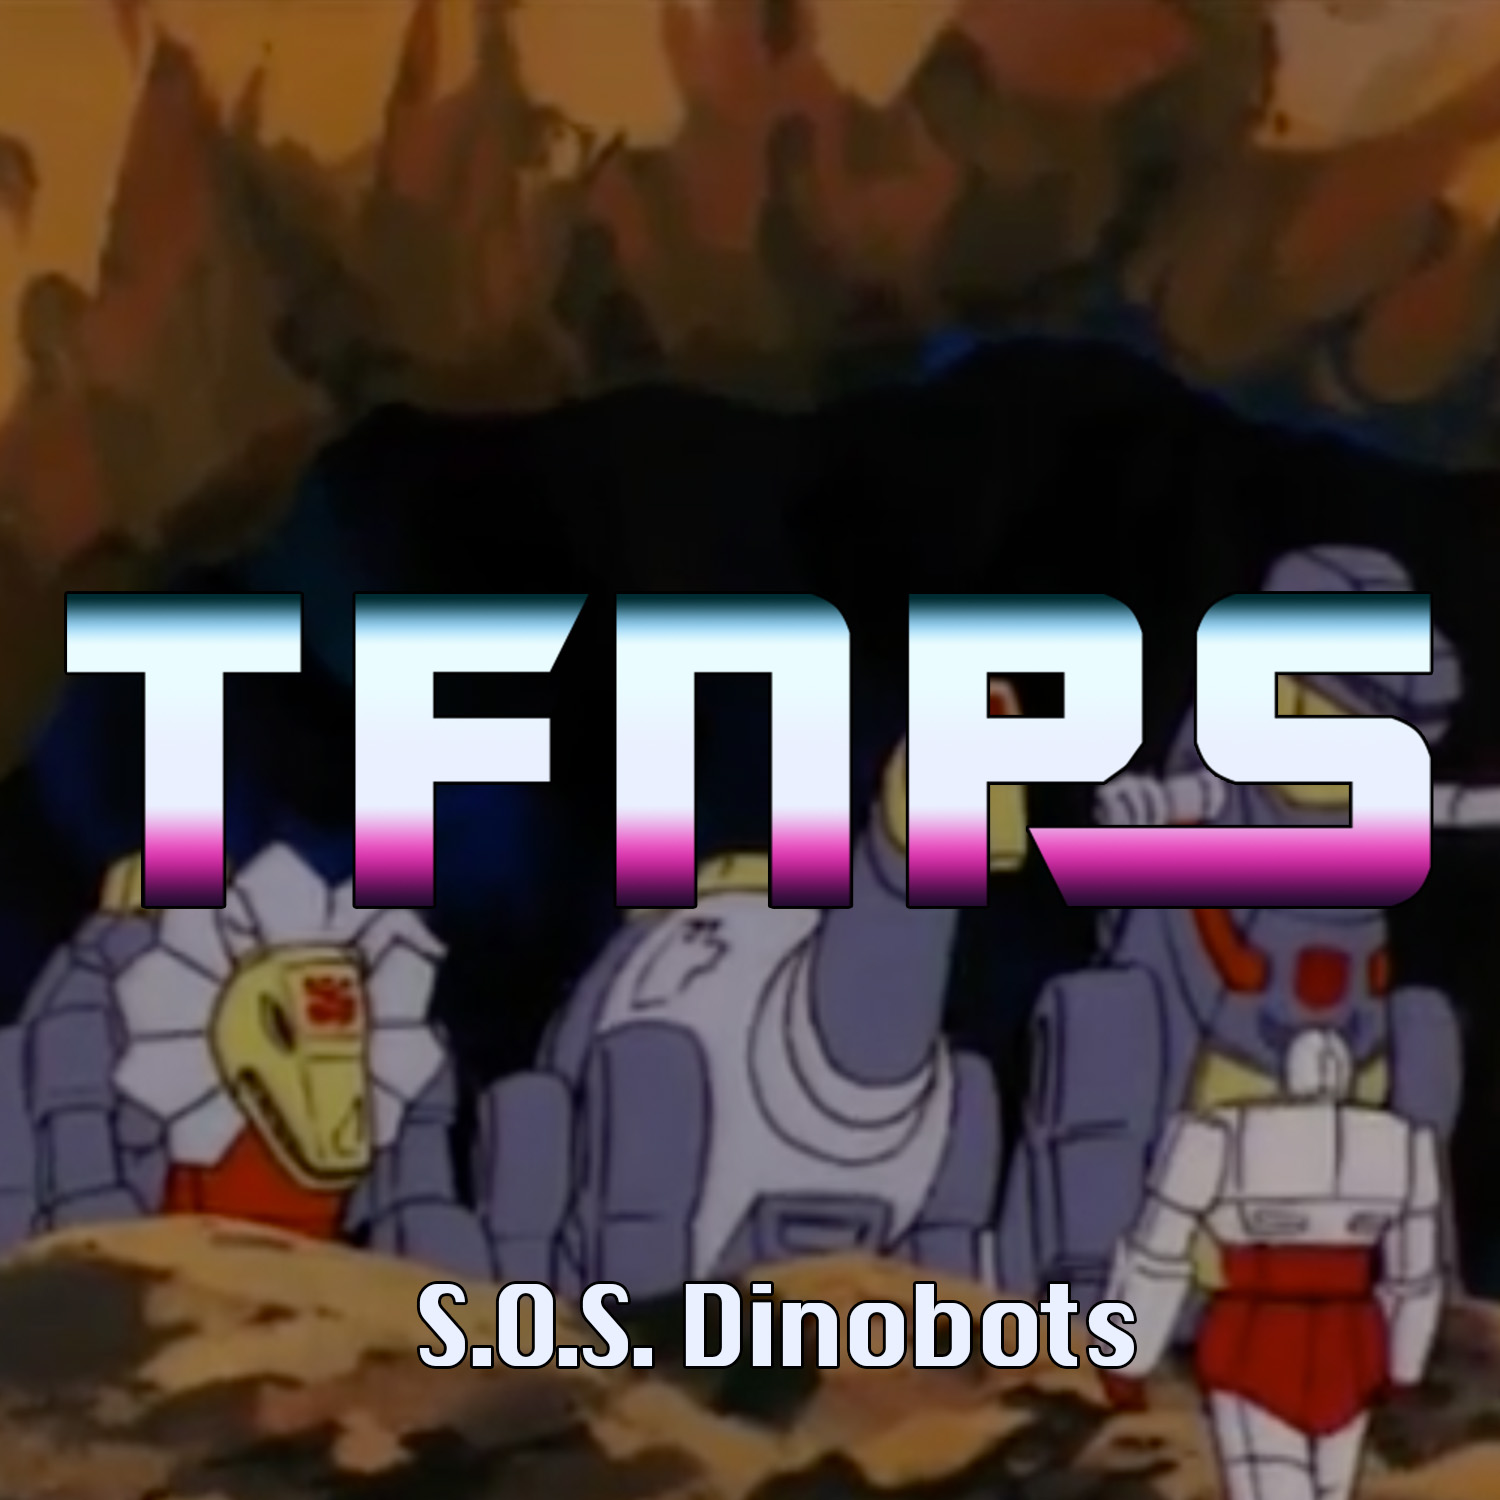 S.O.S. Dinobots